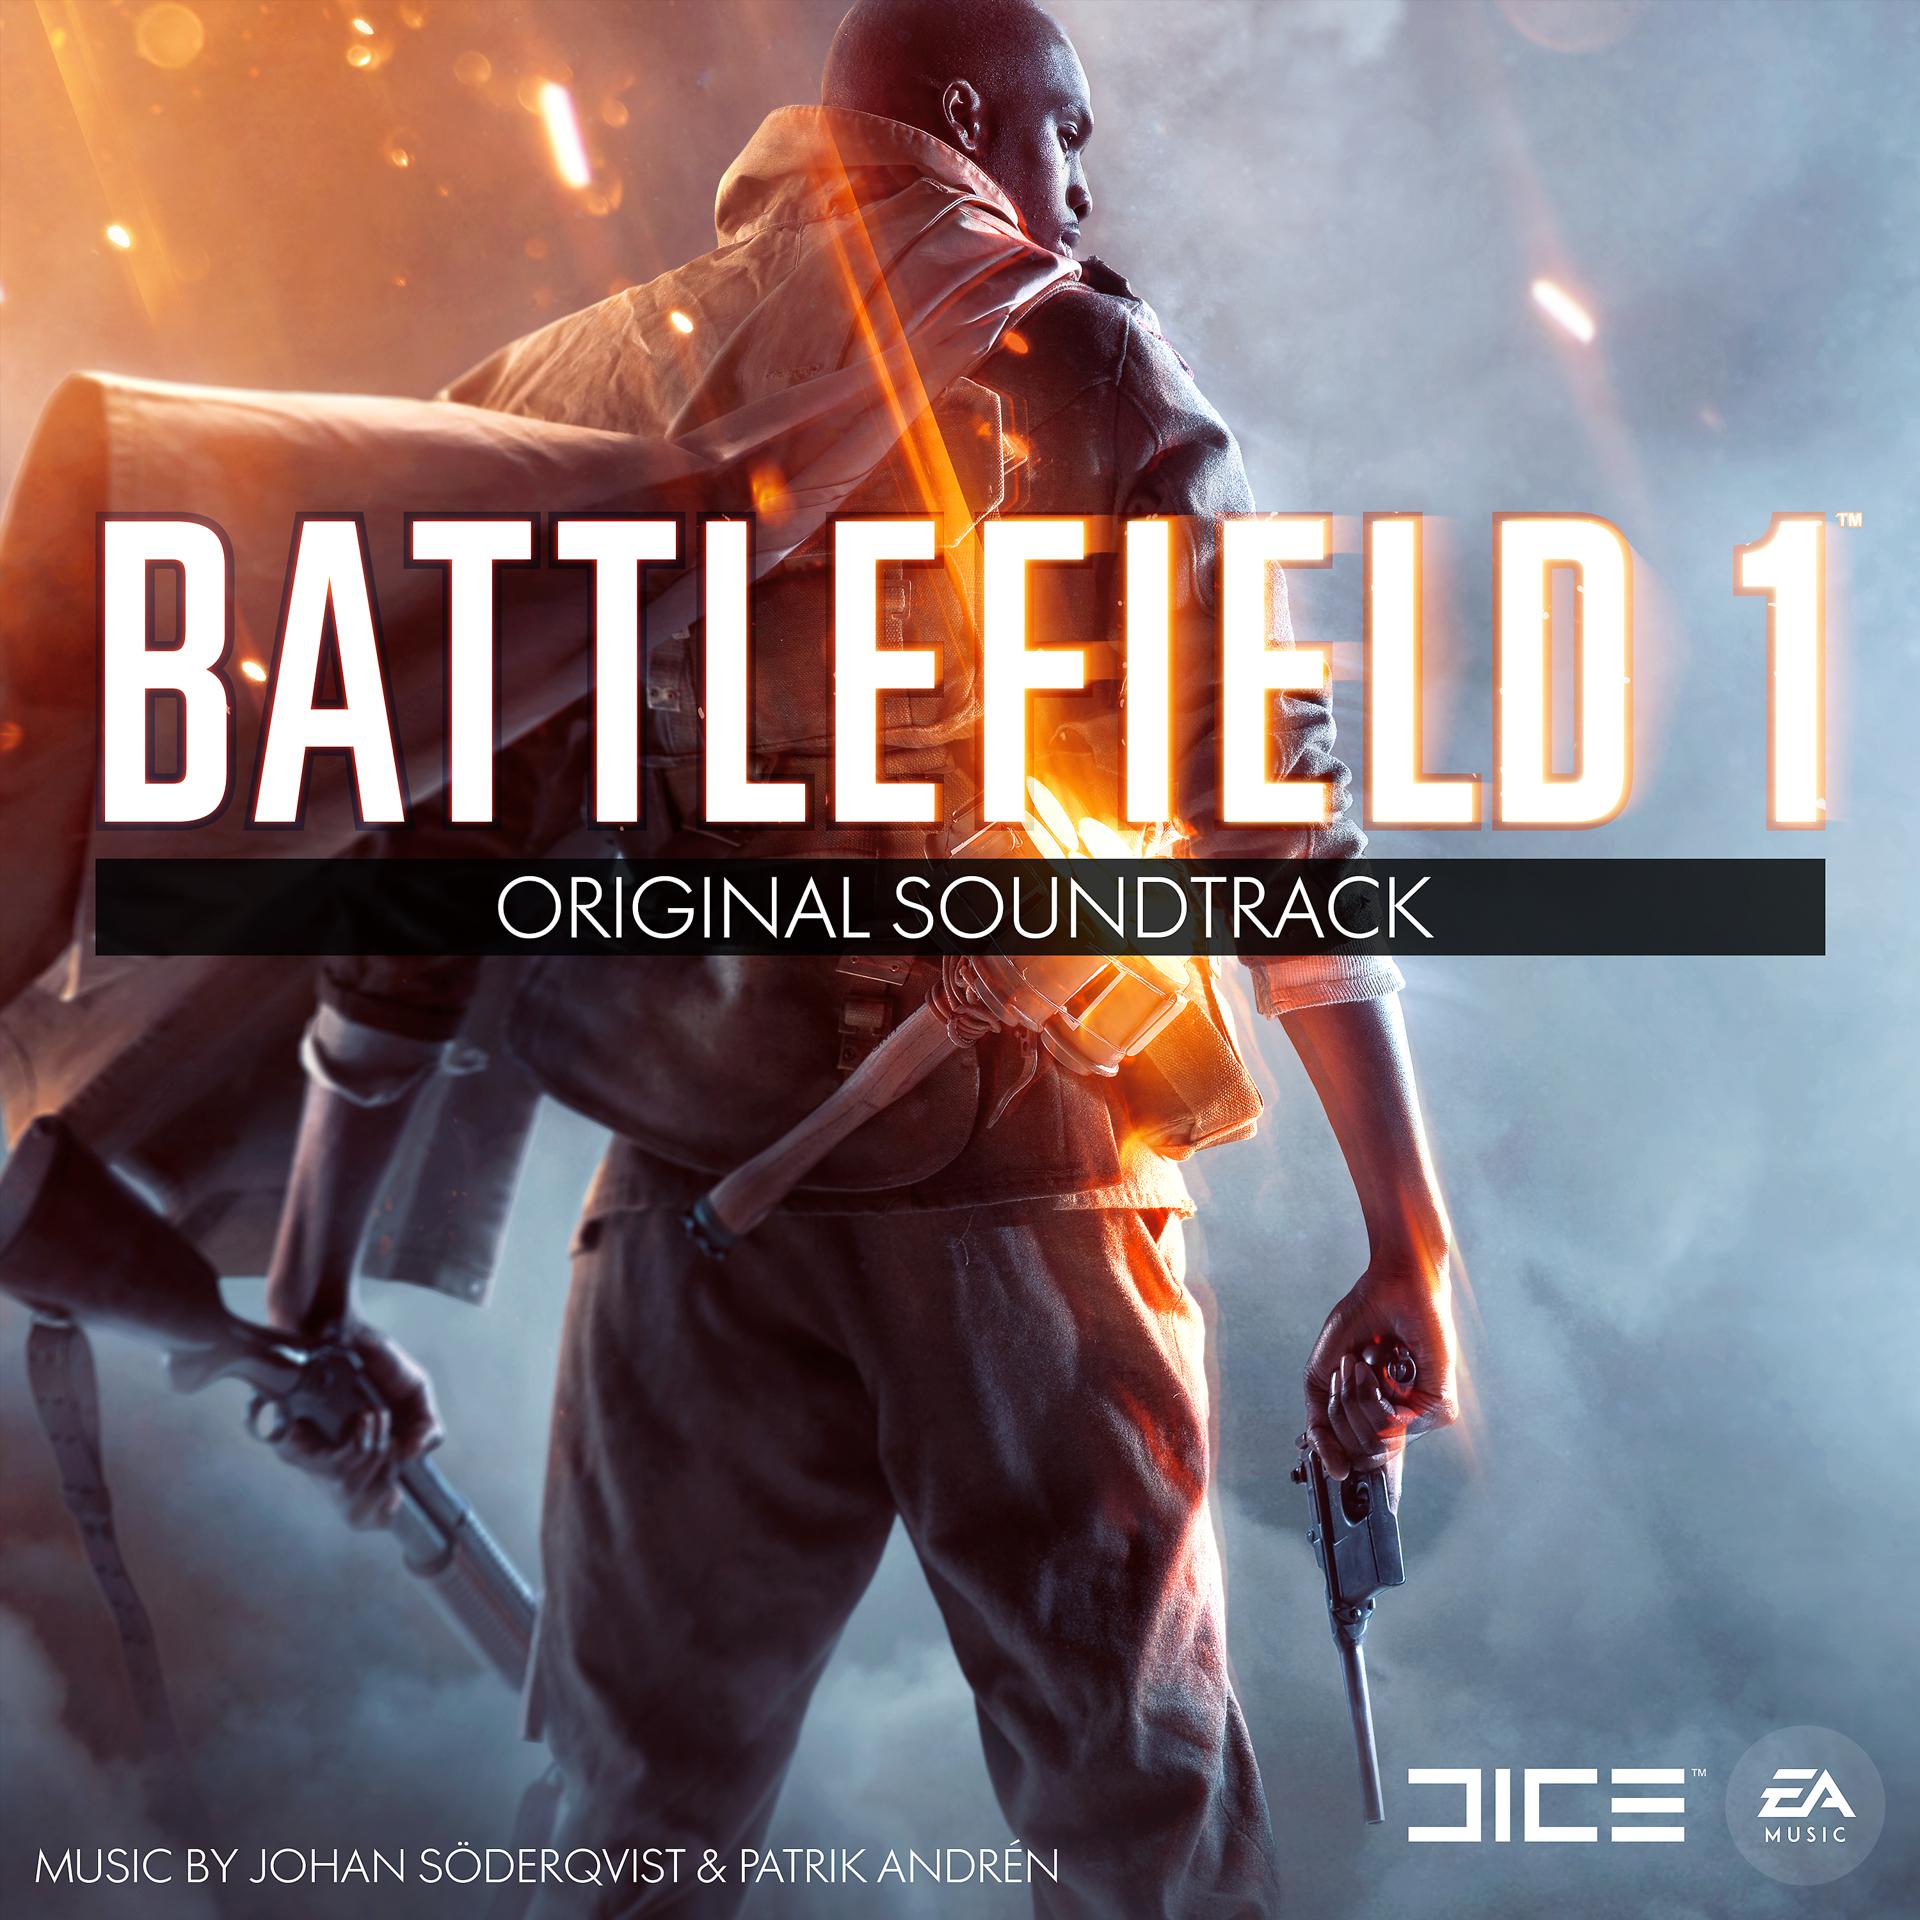 Battlefield soundtrack